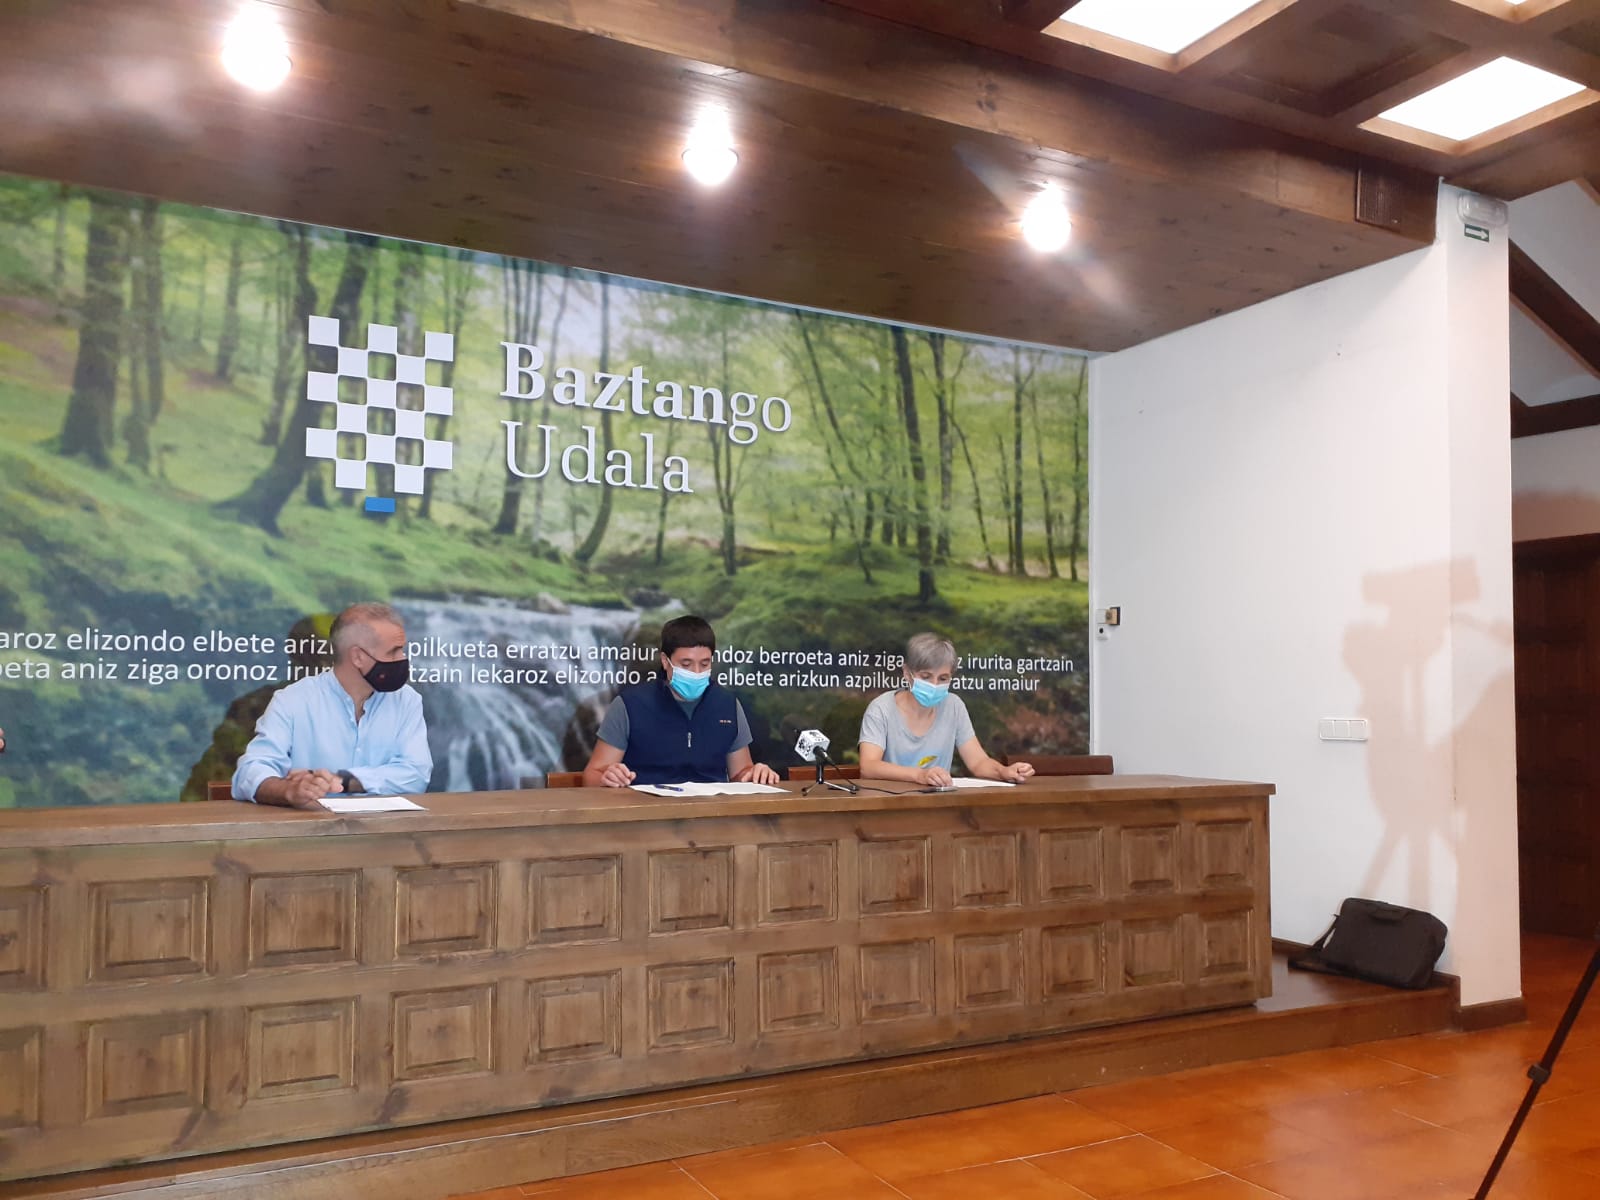 Acciones para desarrollar un turismo sostenible en Baztan